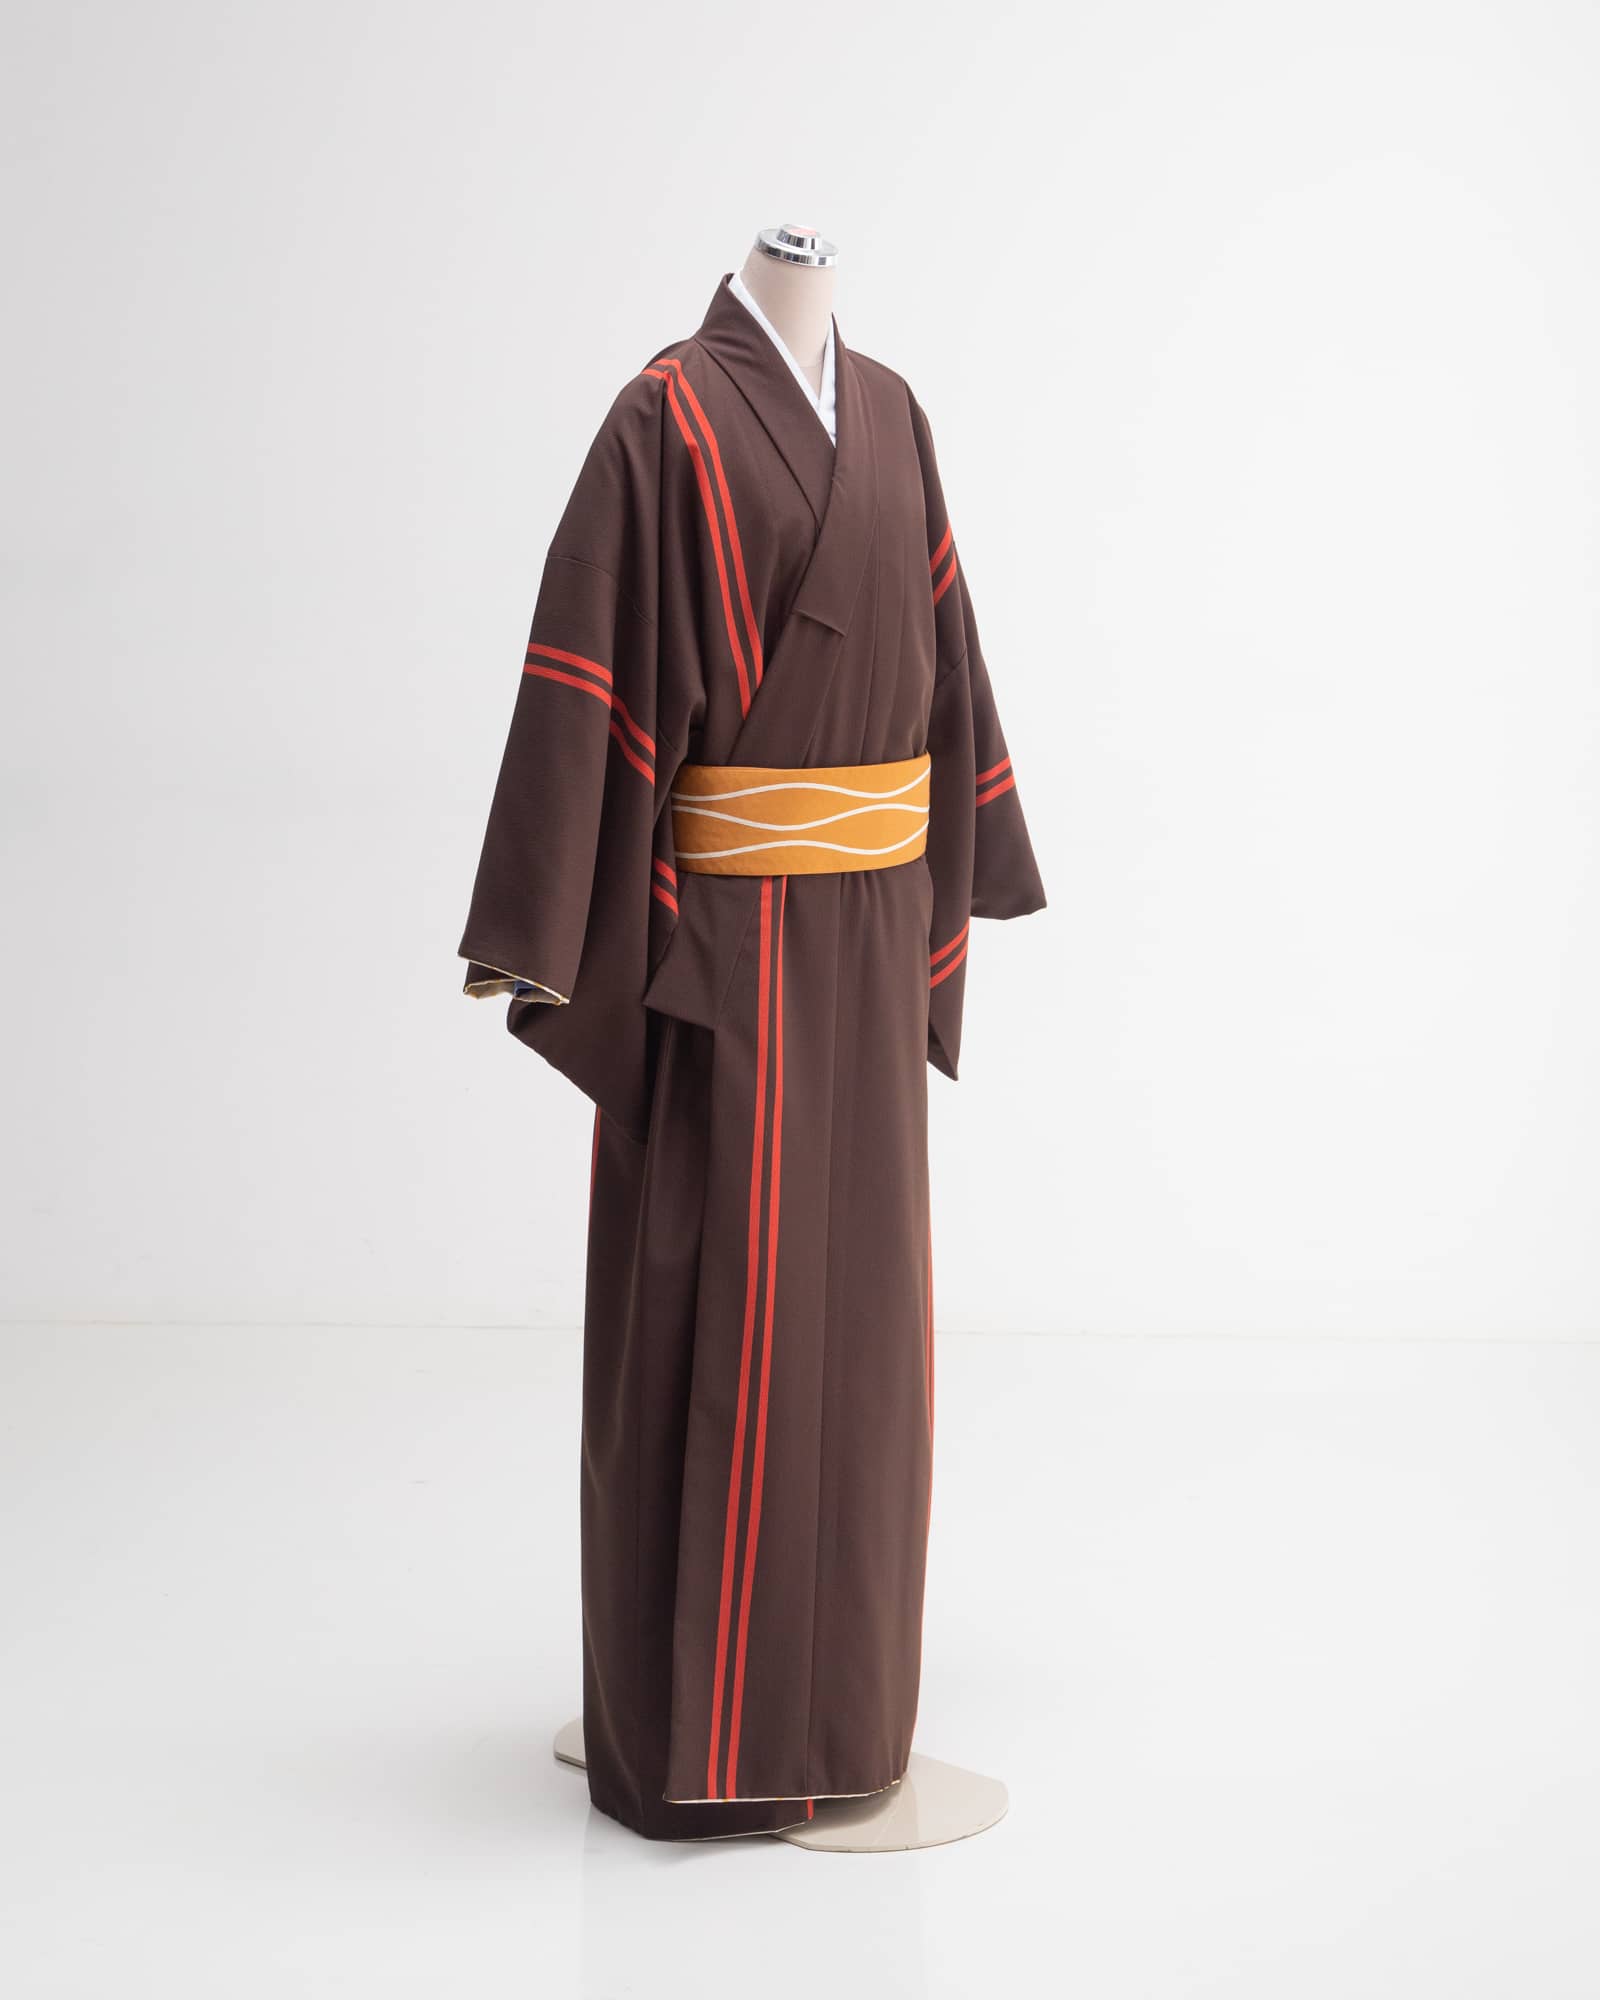 M Kimono004side.jpg